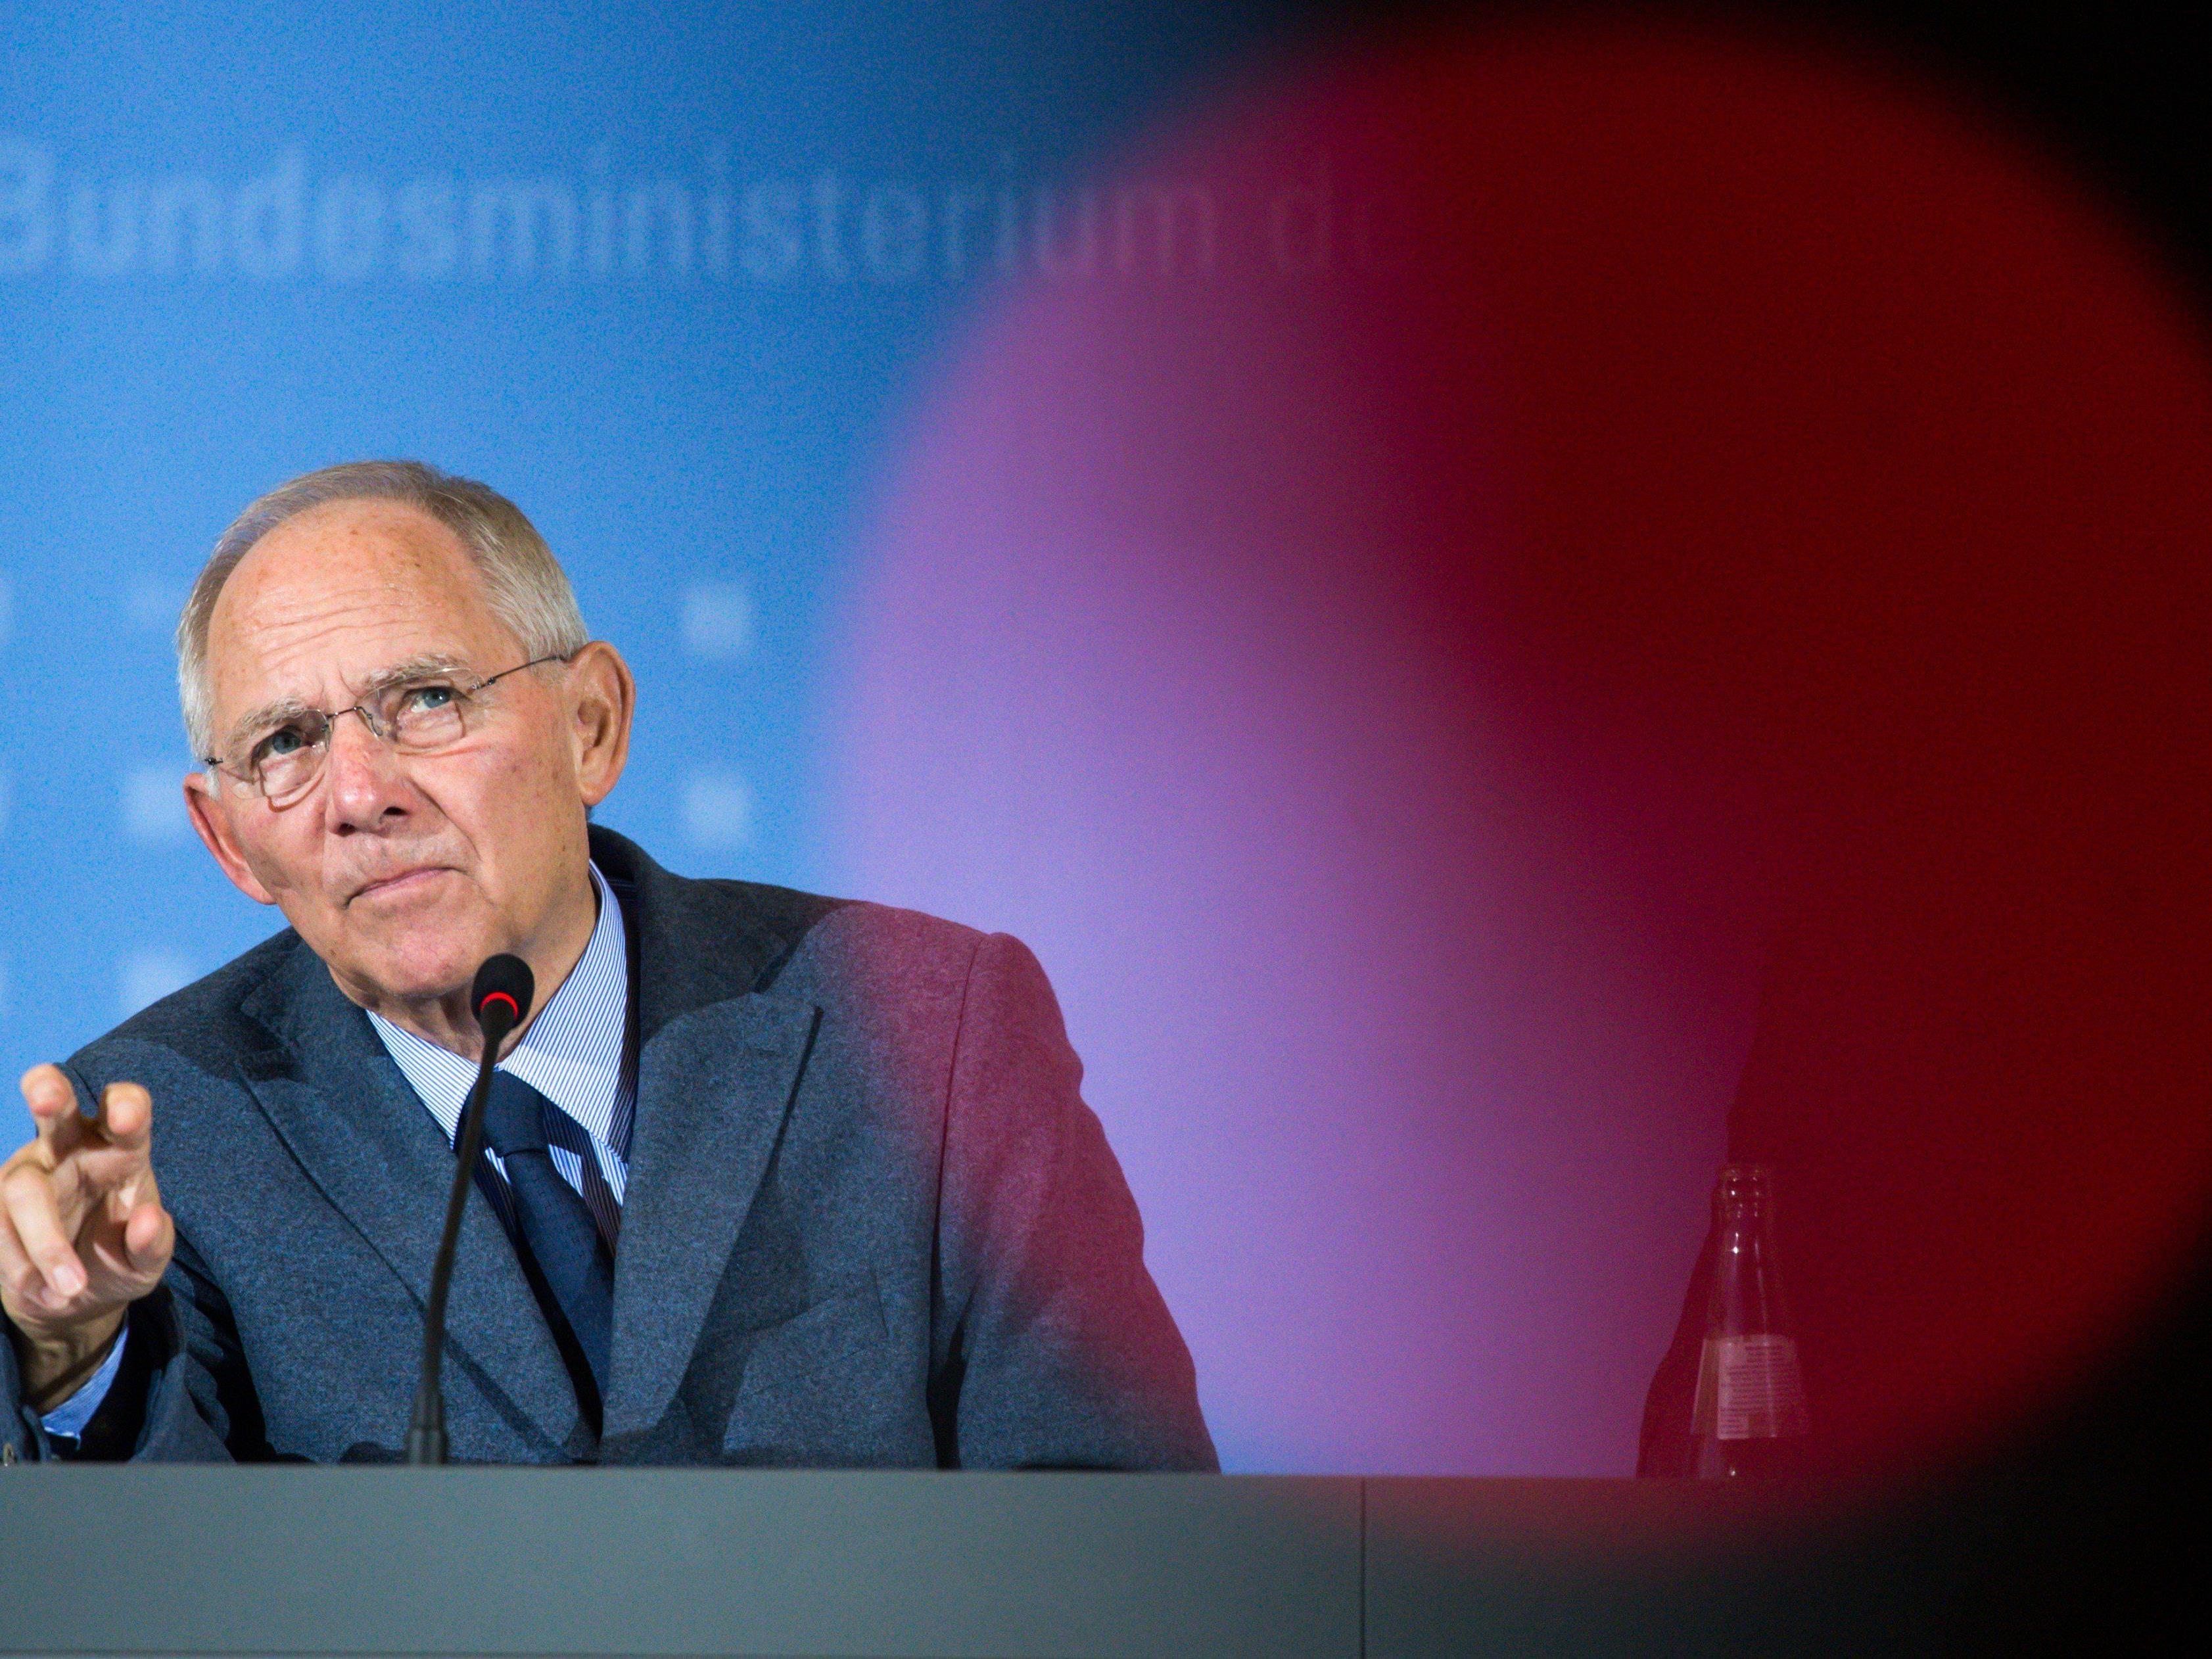 Mit dem Lawinen-Vergleich setzt sich Schäuble, der auch gern mal zündelt, einmal mehr von Angela Merkel ab.